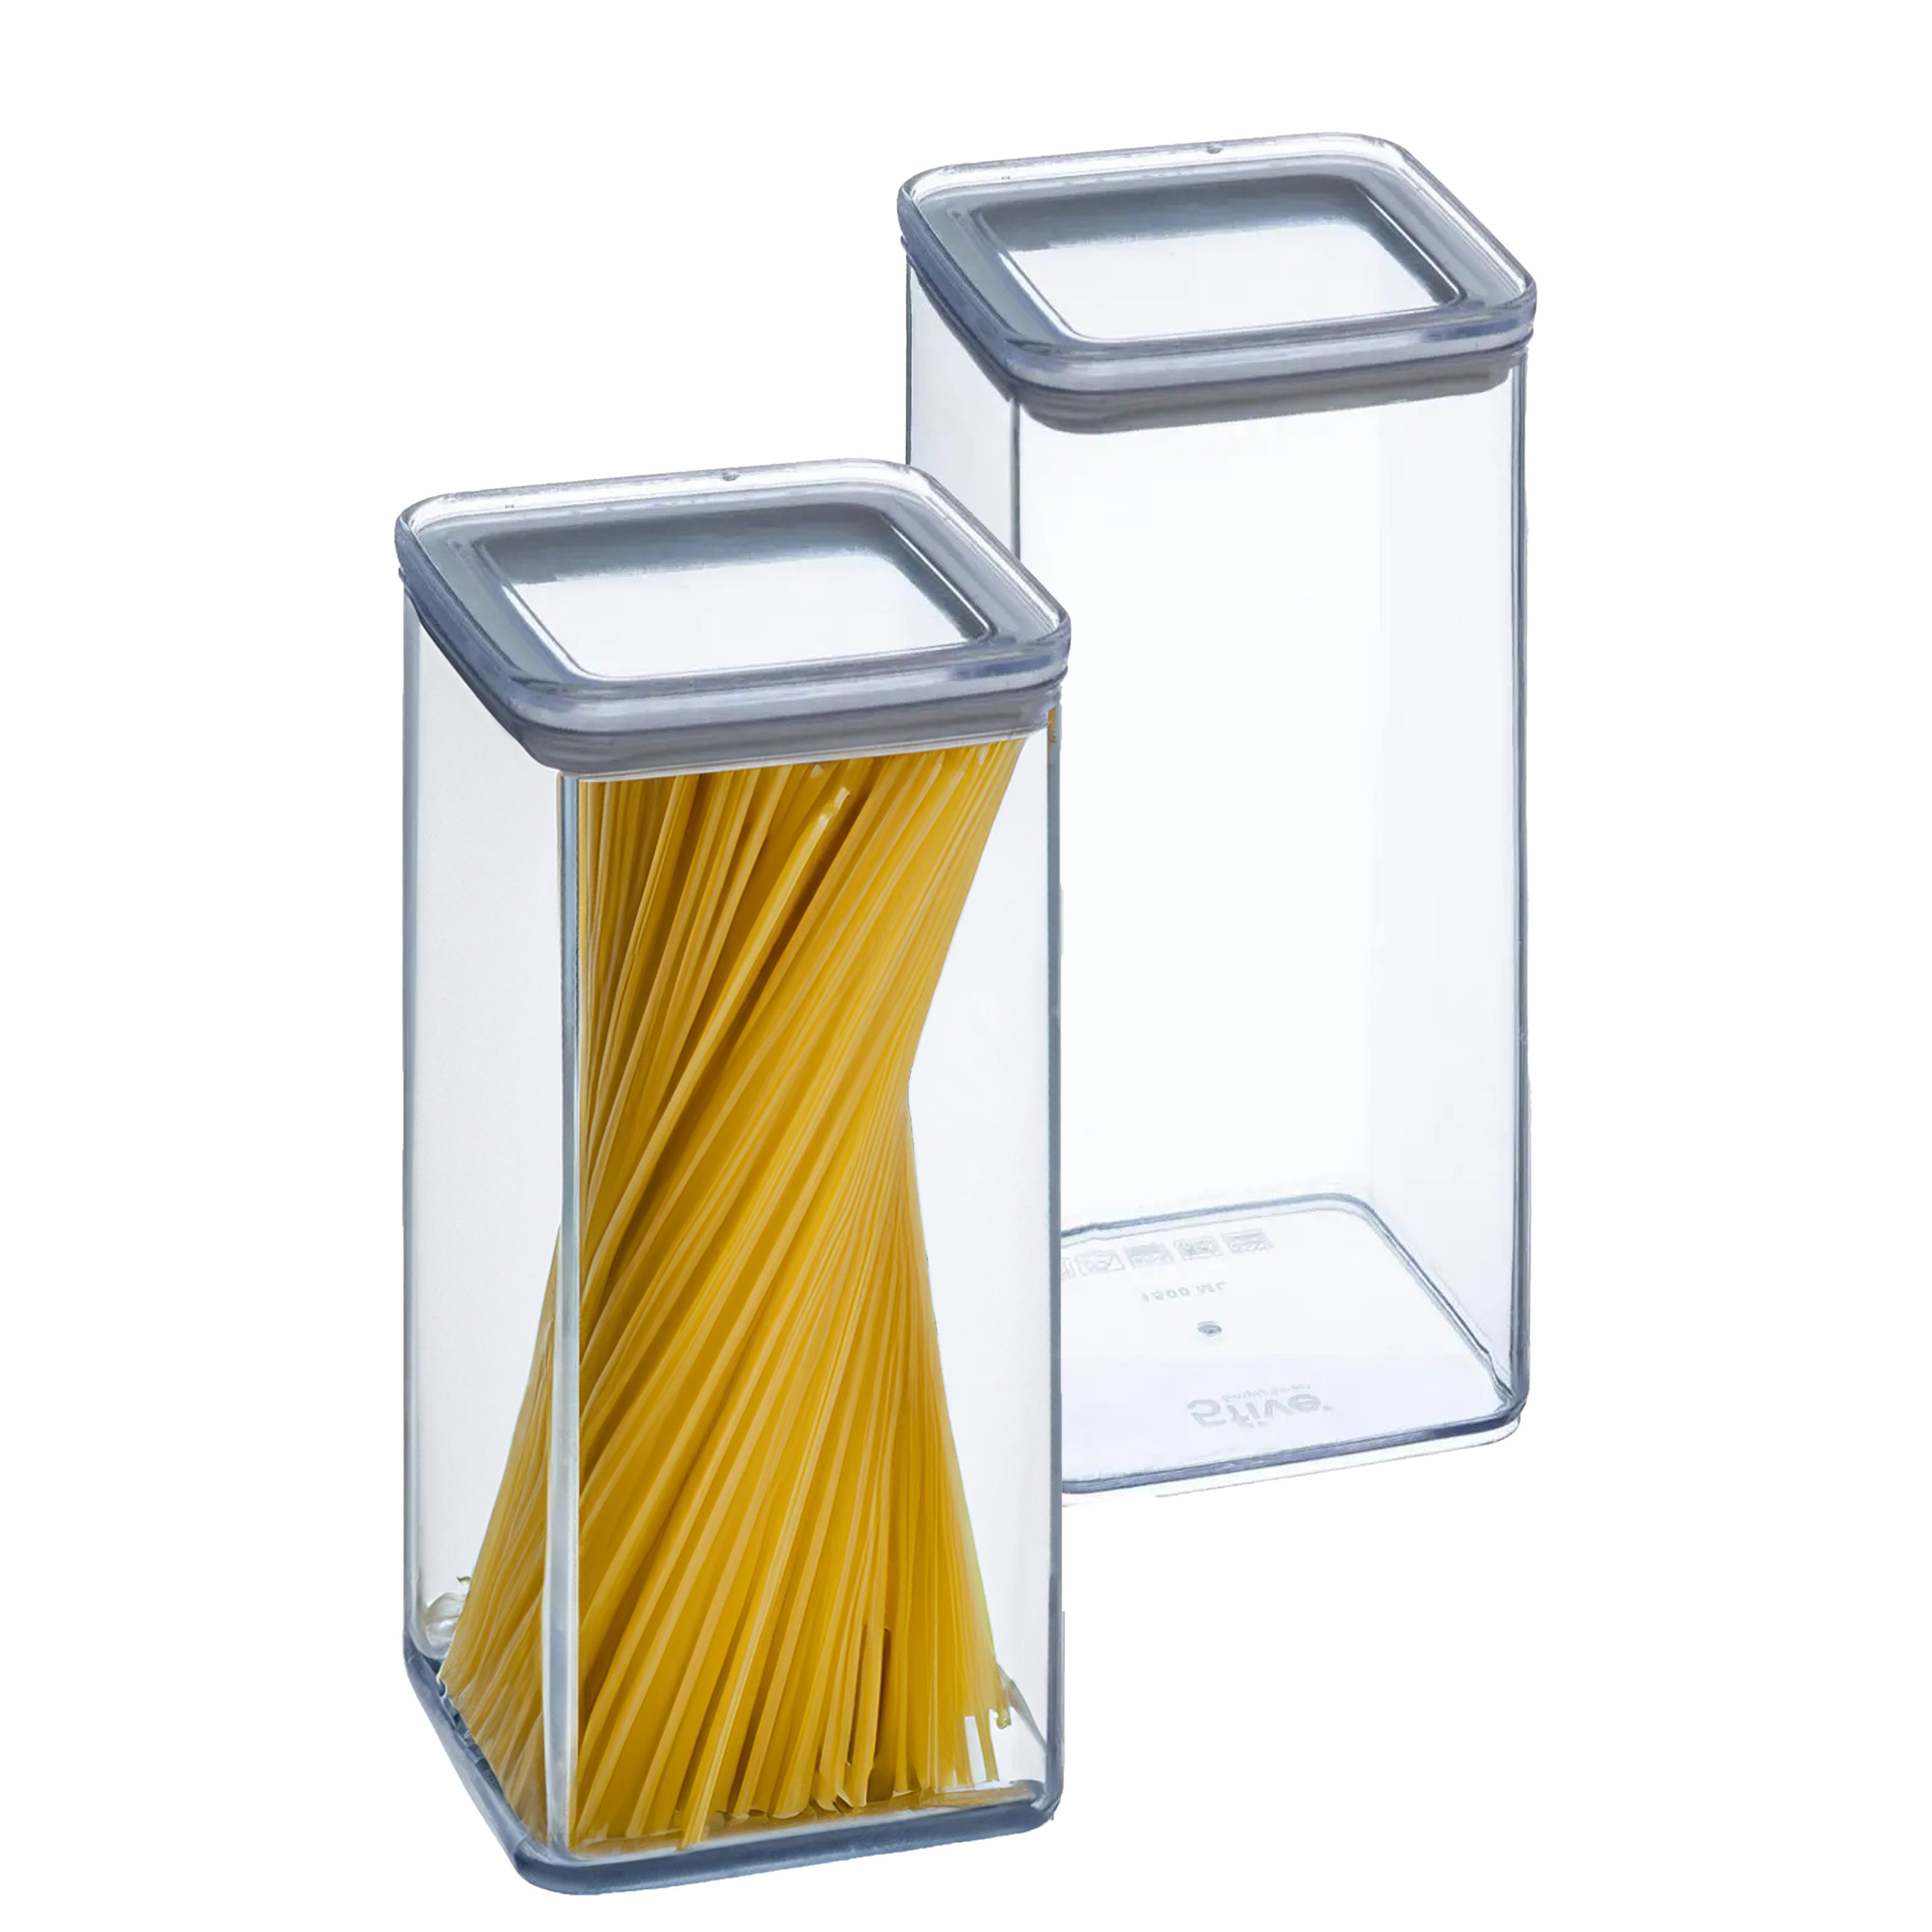 5five Voorraadpot - 2x - keuken/voedsel - kunststof - 1500 ml - luchtdichte deksel - transparant -